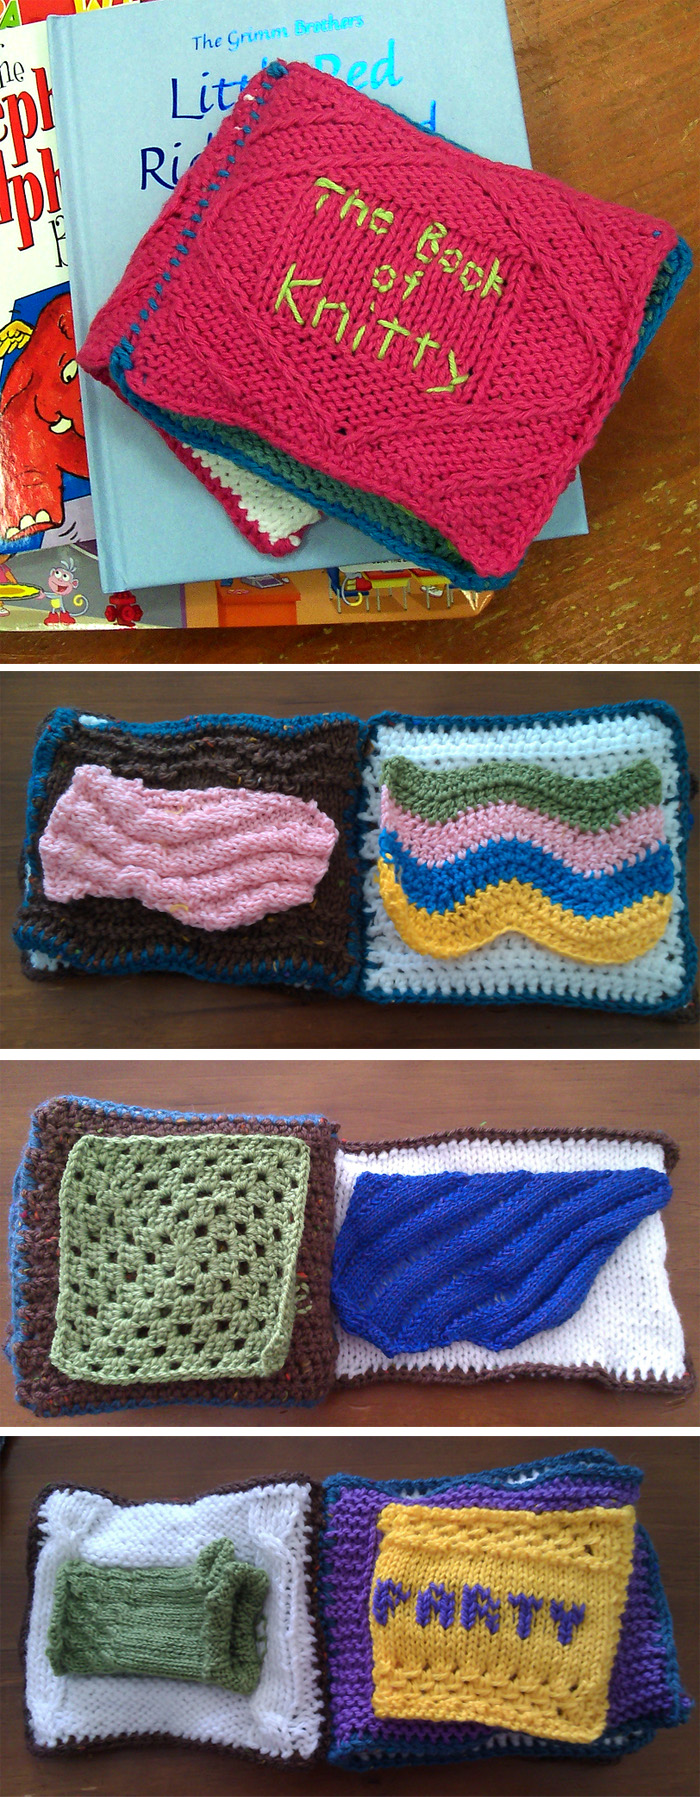 Free Knitting Pattern for Knitting Sampler Book